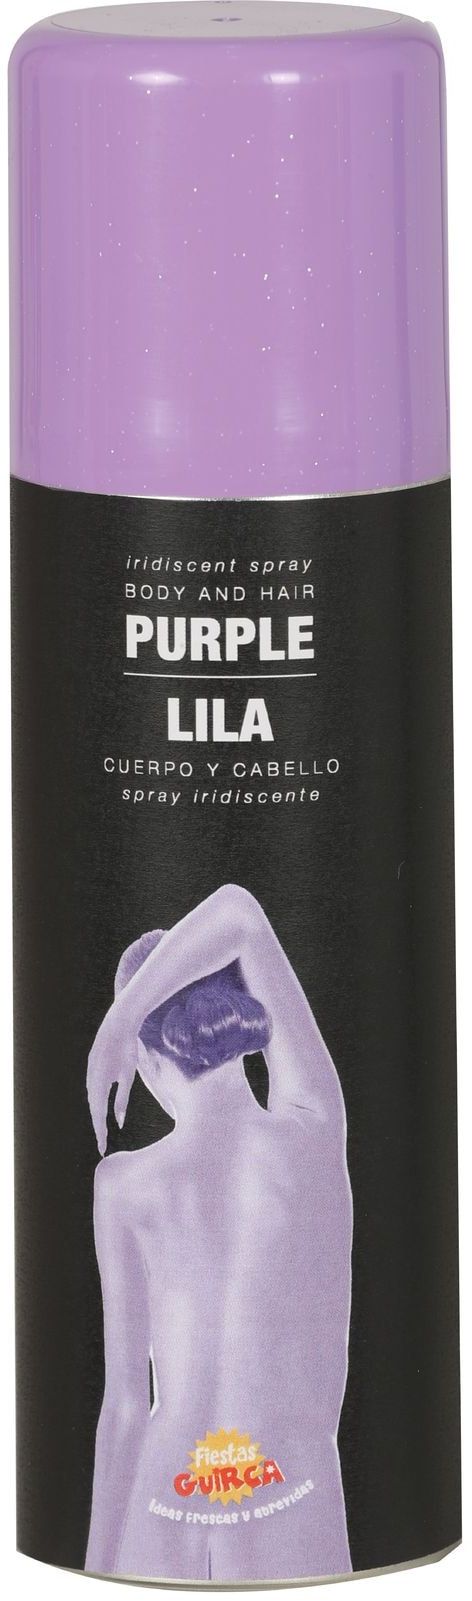 Haar en bodyspray violet paars